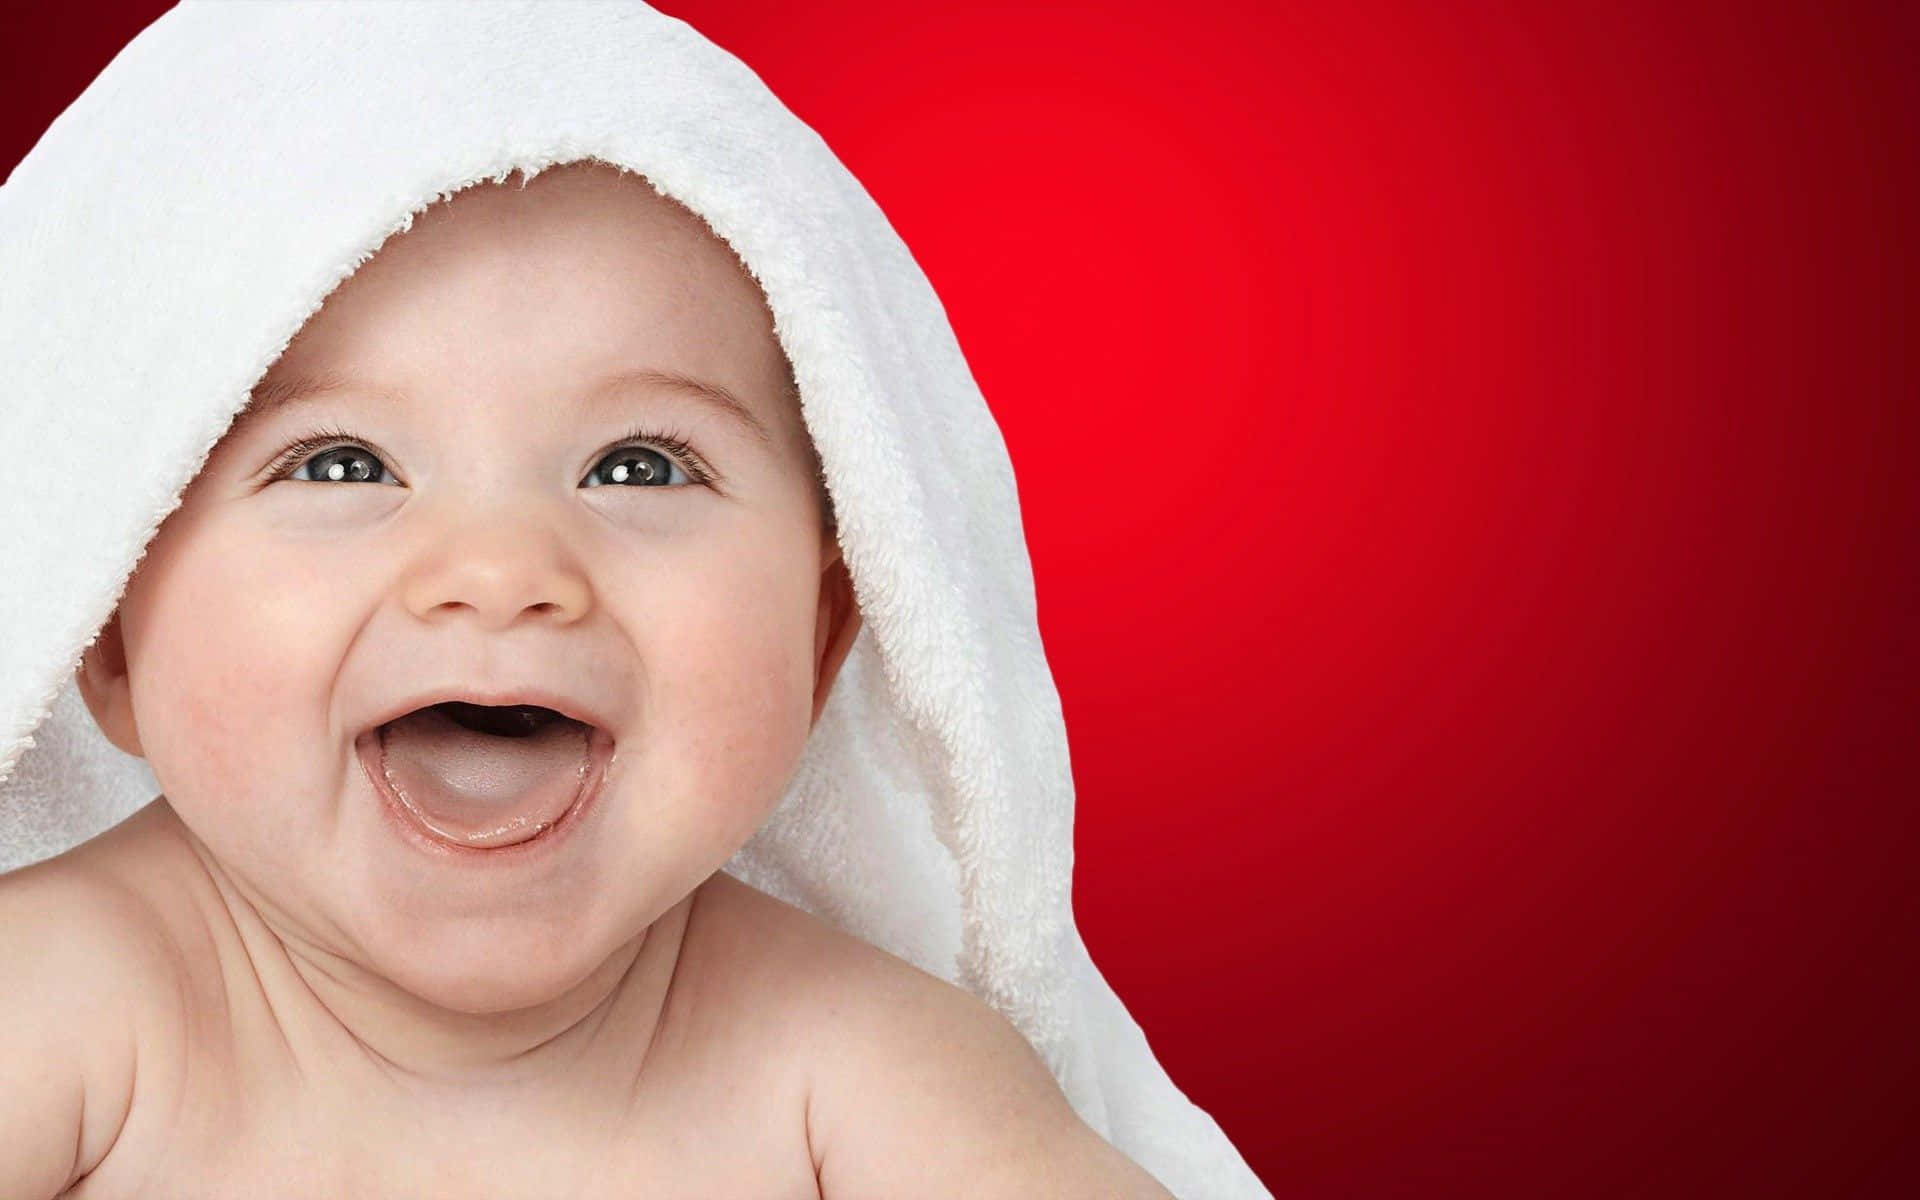 Imagende Fondo Con Bebé Sonriendo En Un Fondo Rojo.